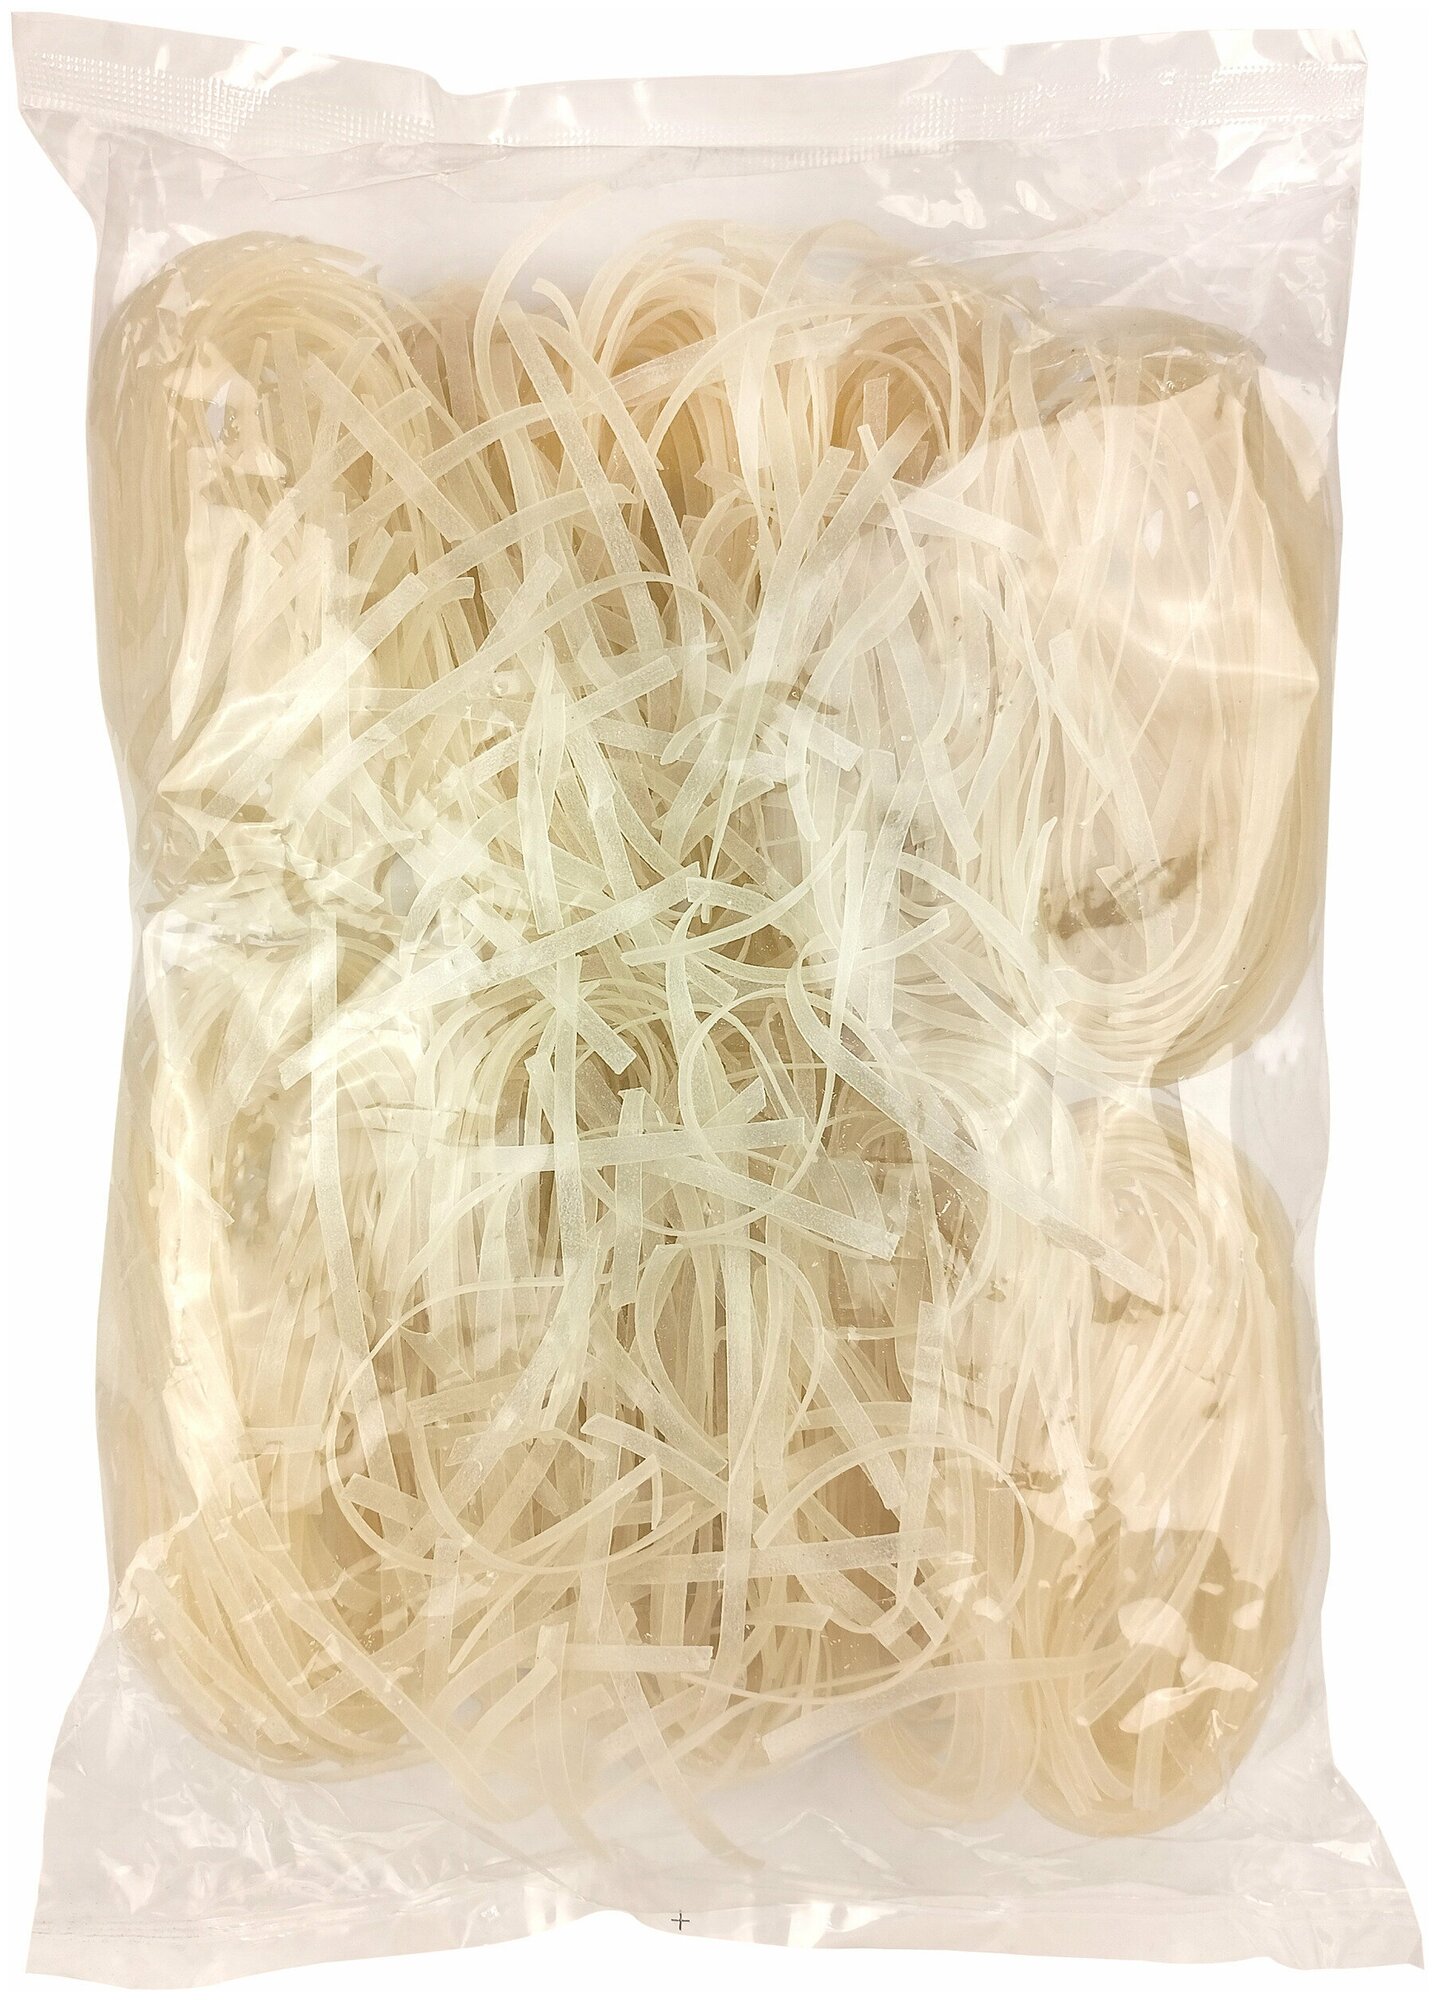 Midori Лапша рисовая узкая 4 мм 2 пачки по 500 г - фотография № 2